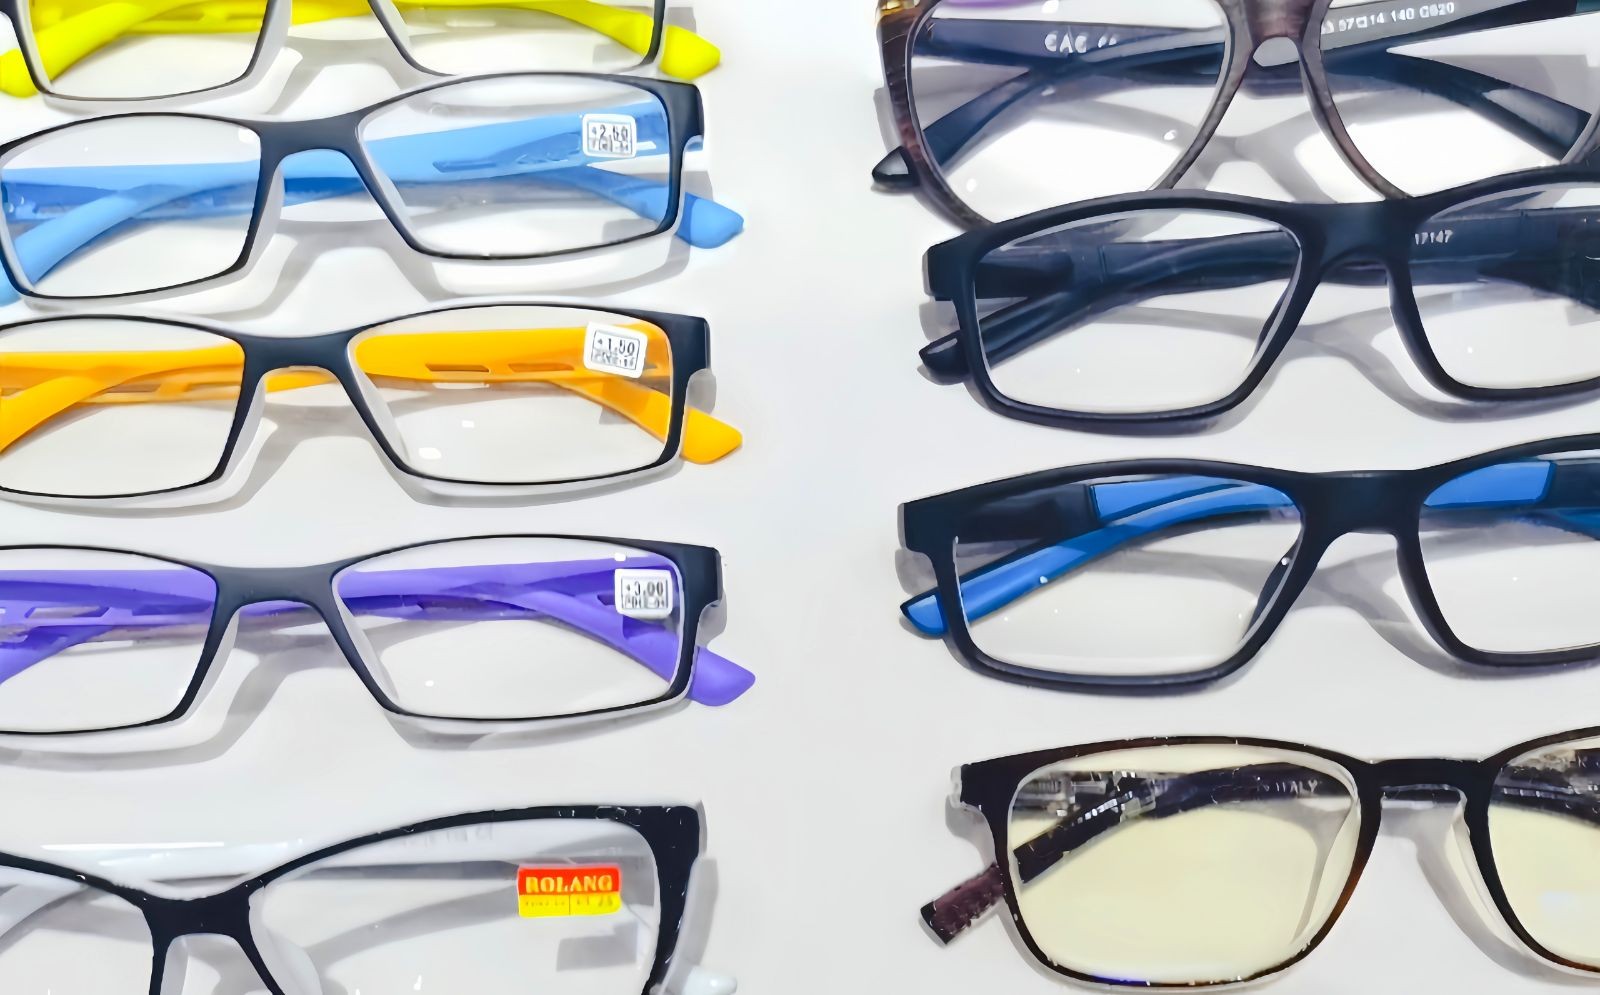 COTV全球直播-台州臻靓眼镜有限公司研发生产各种男女时尚休闲眼镜、老花眼镜、太阳眼镜及各种配套镜片、镜架等产品，欢迎大家光临！